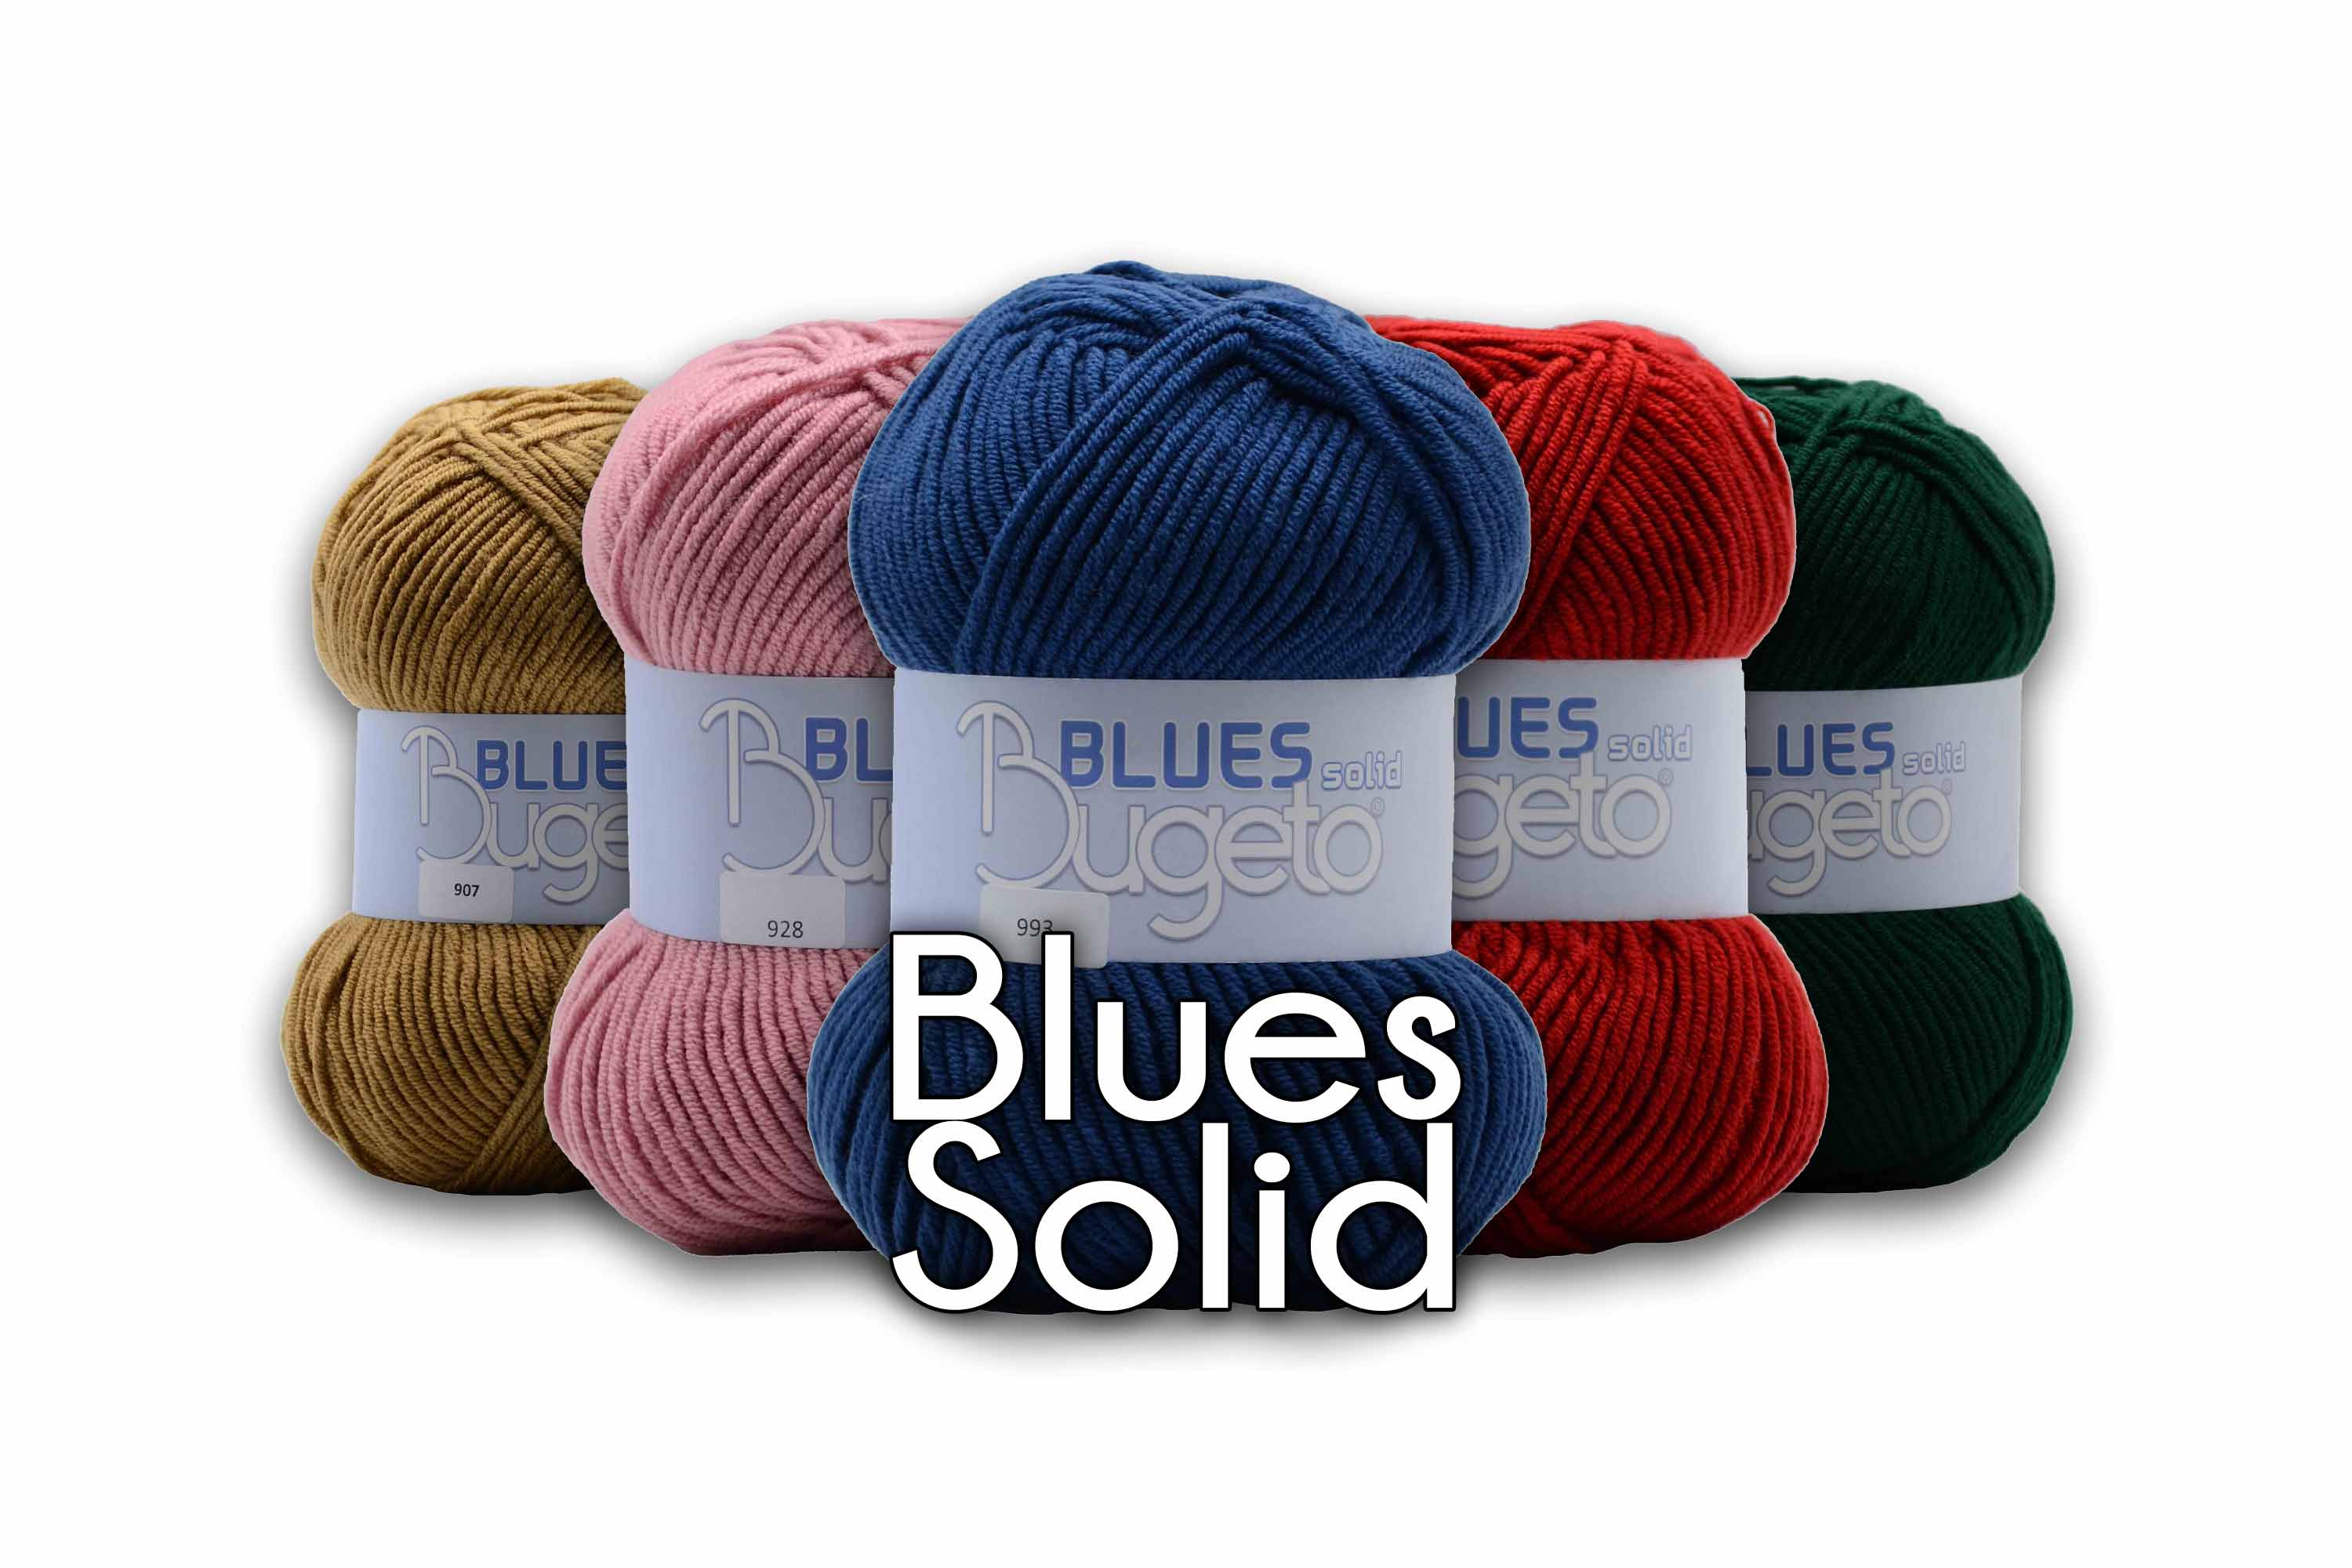 fancy yarn premium acrylic yarn Bugeto yarn winter yarn soft thick yarn acrylic blues solid yarn bugeto yarn bugeto